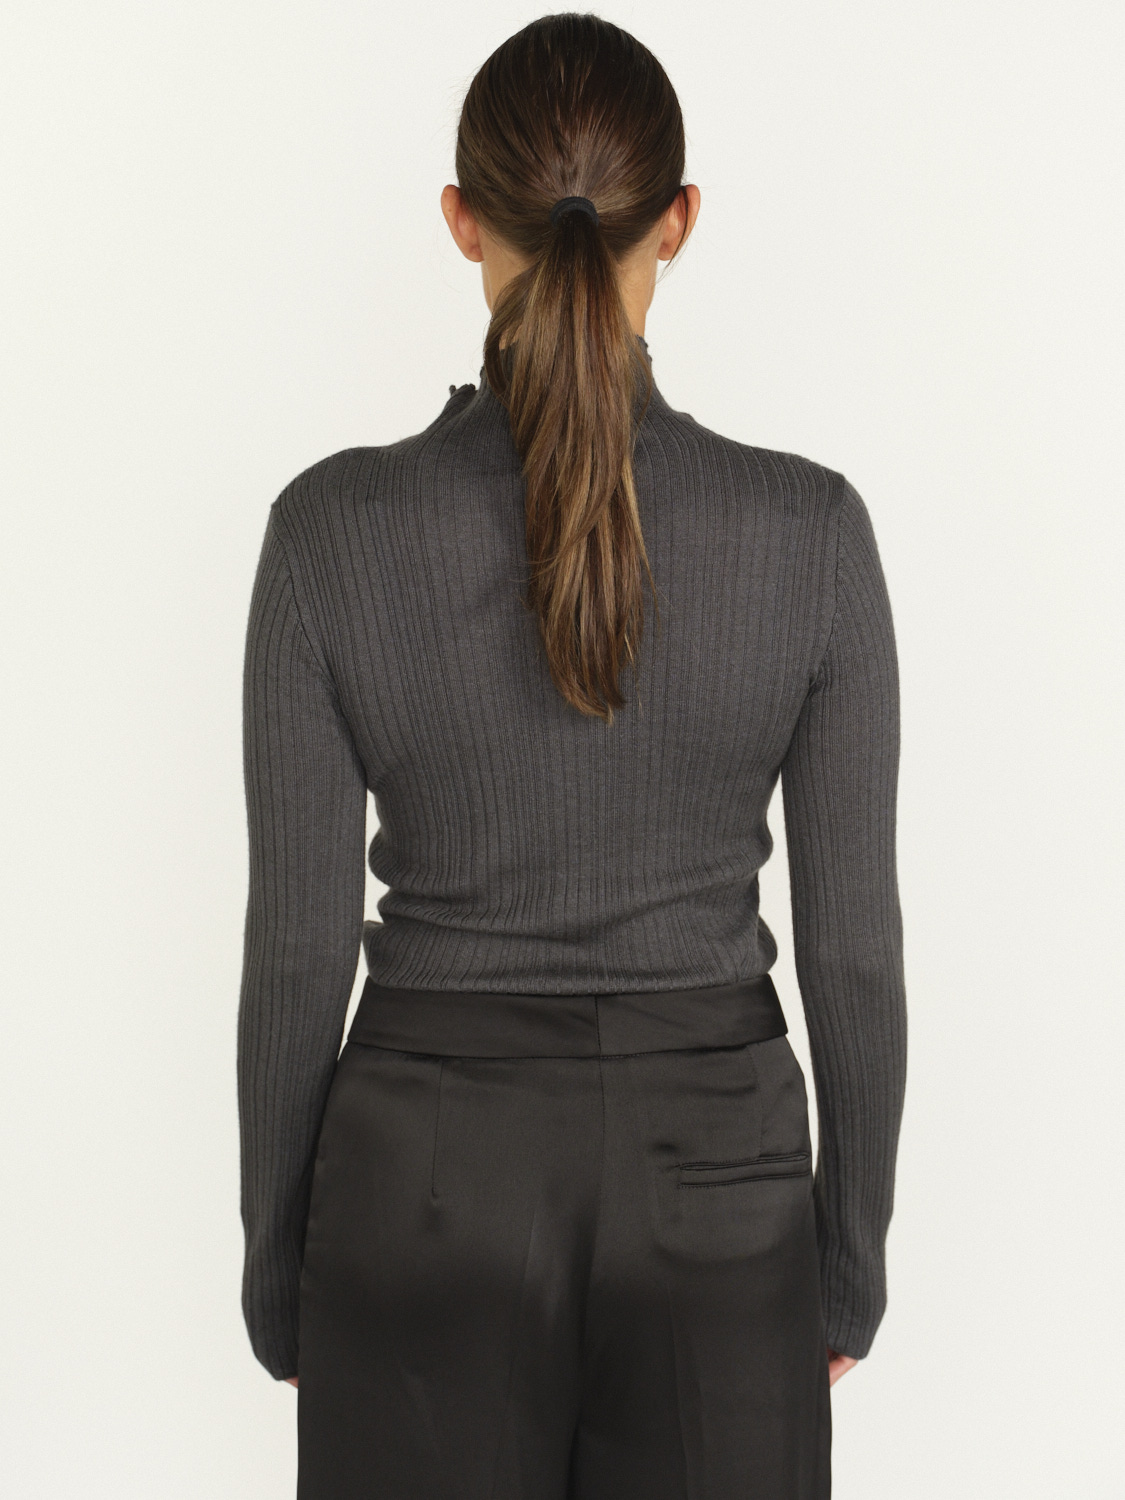 Iris von Arnim Cashmere Silk Sweater - cashmere and silk ribbed sweater   grey M